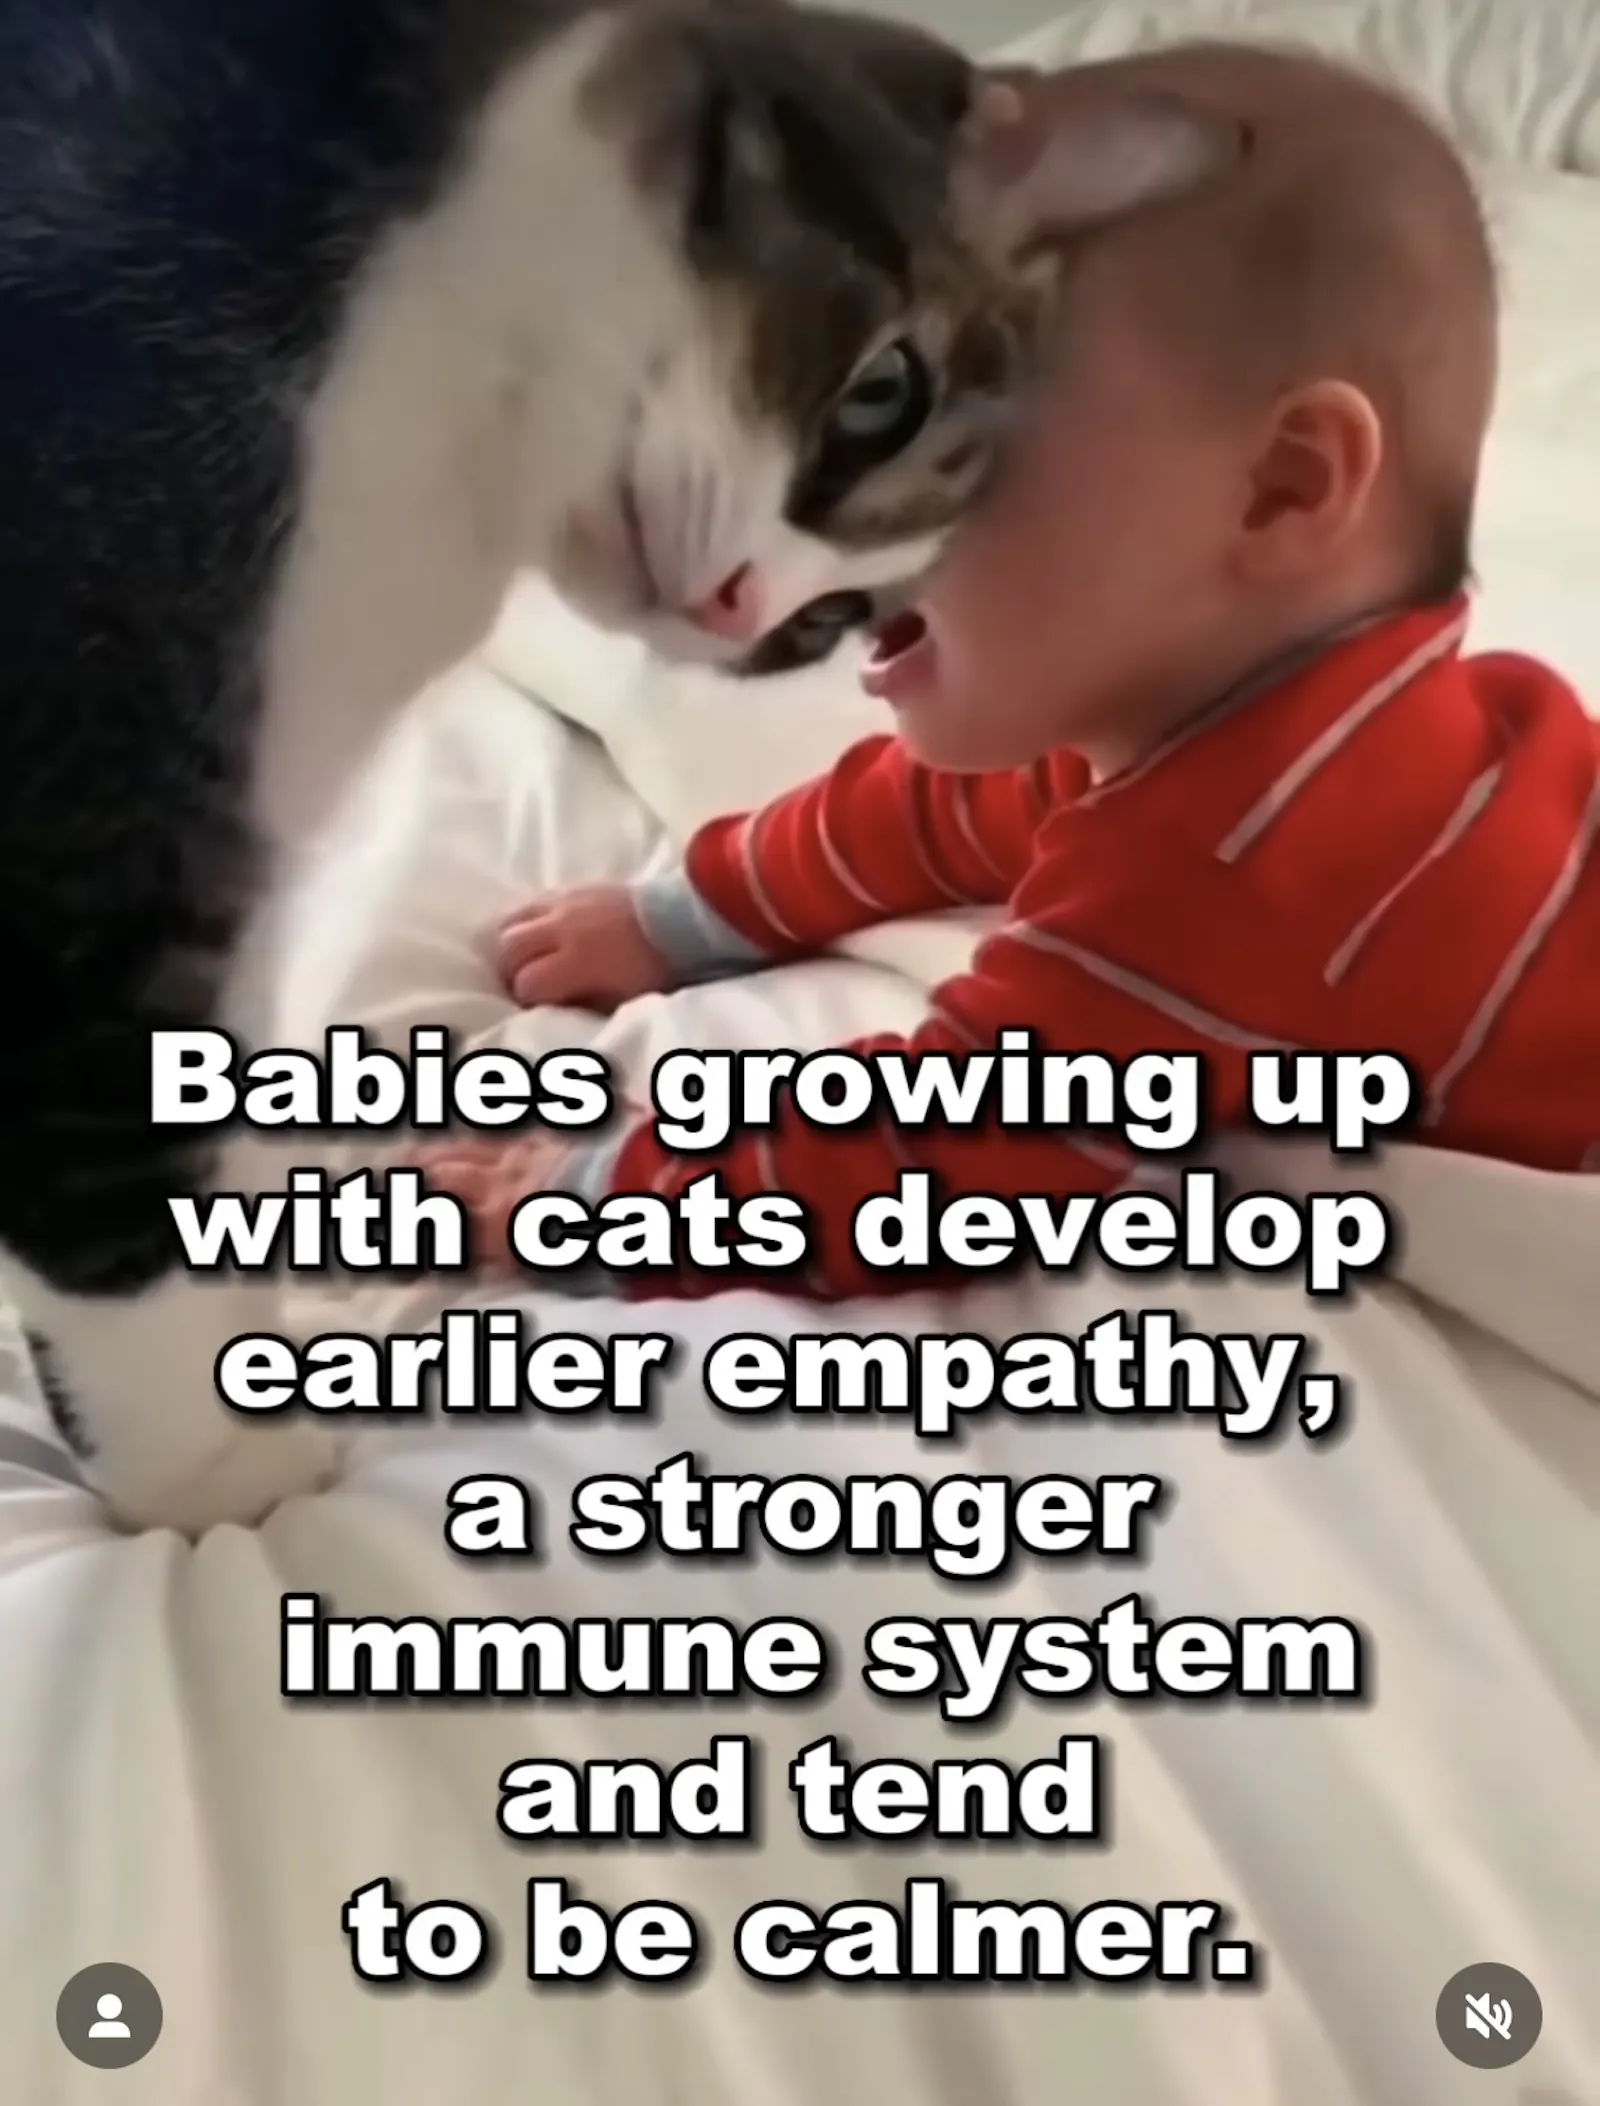 Meme, in dem behauptet wird, Katzen würden Baby ruhiger machen. Bild zeigt Katzenkopf an Babykopf